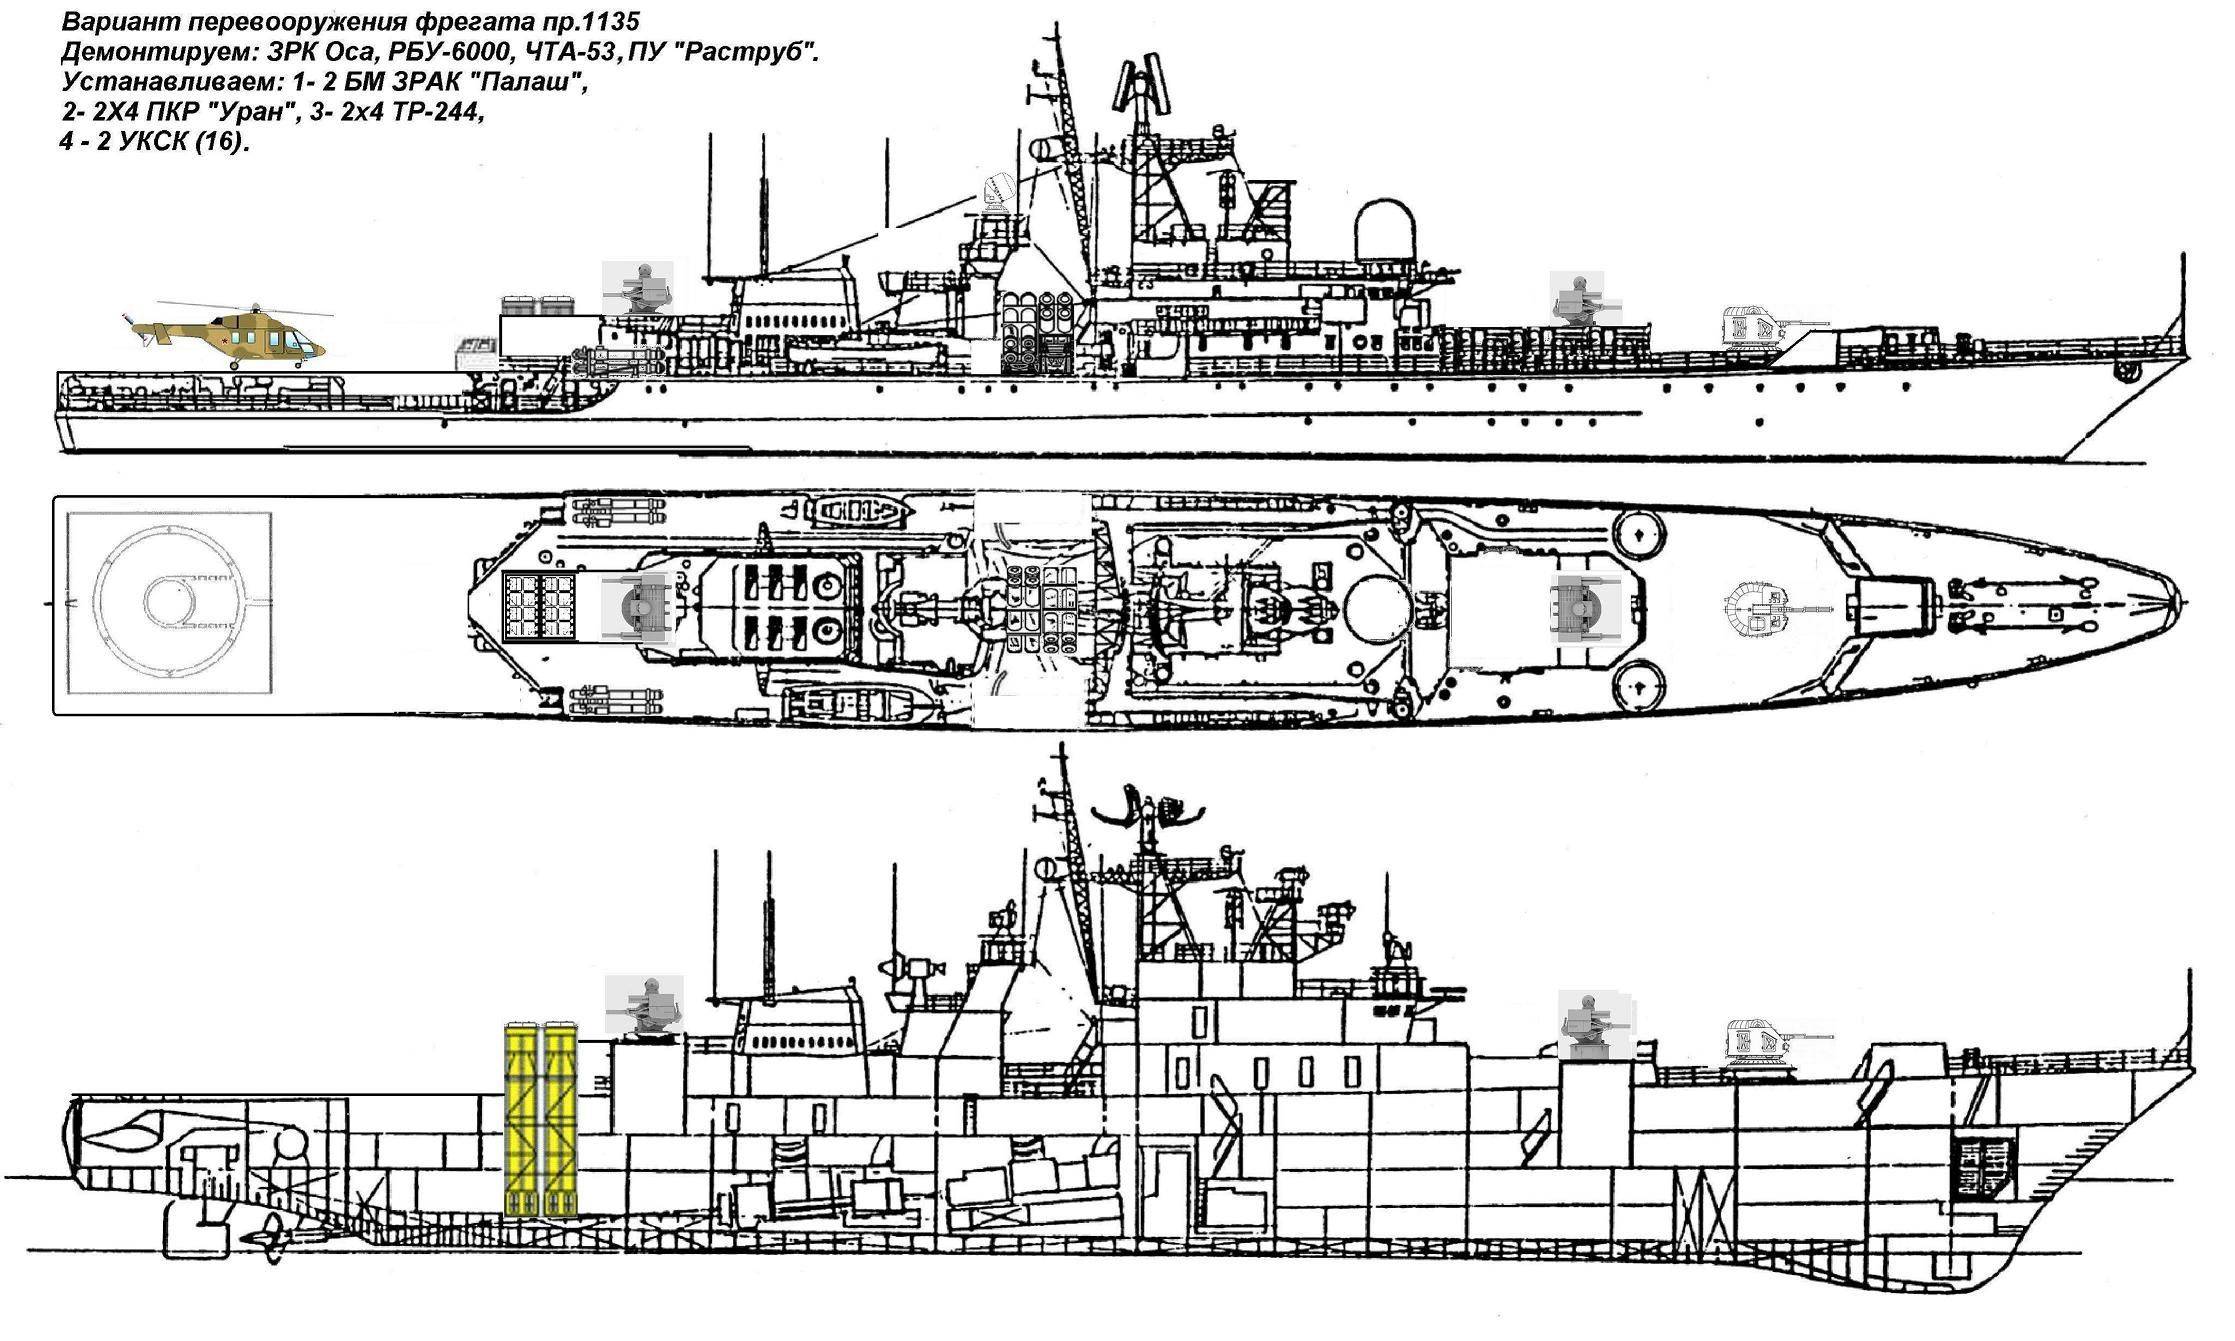 Фрегаты (сторожевые корабли) проекта 11356р/м. досье